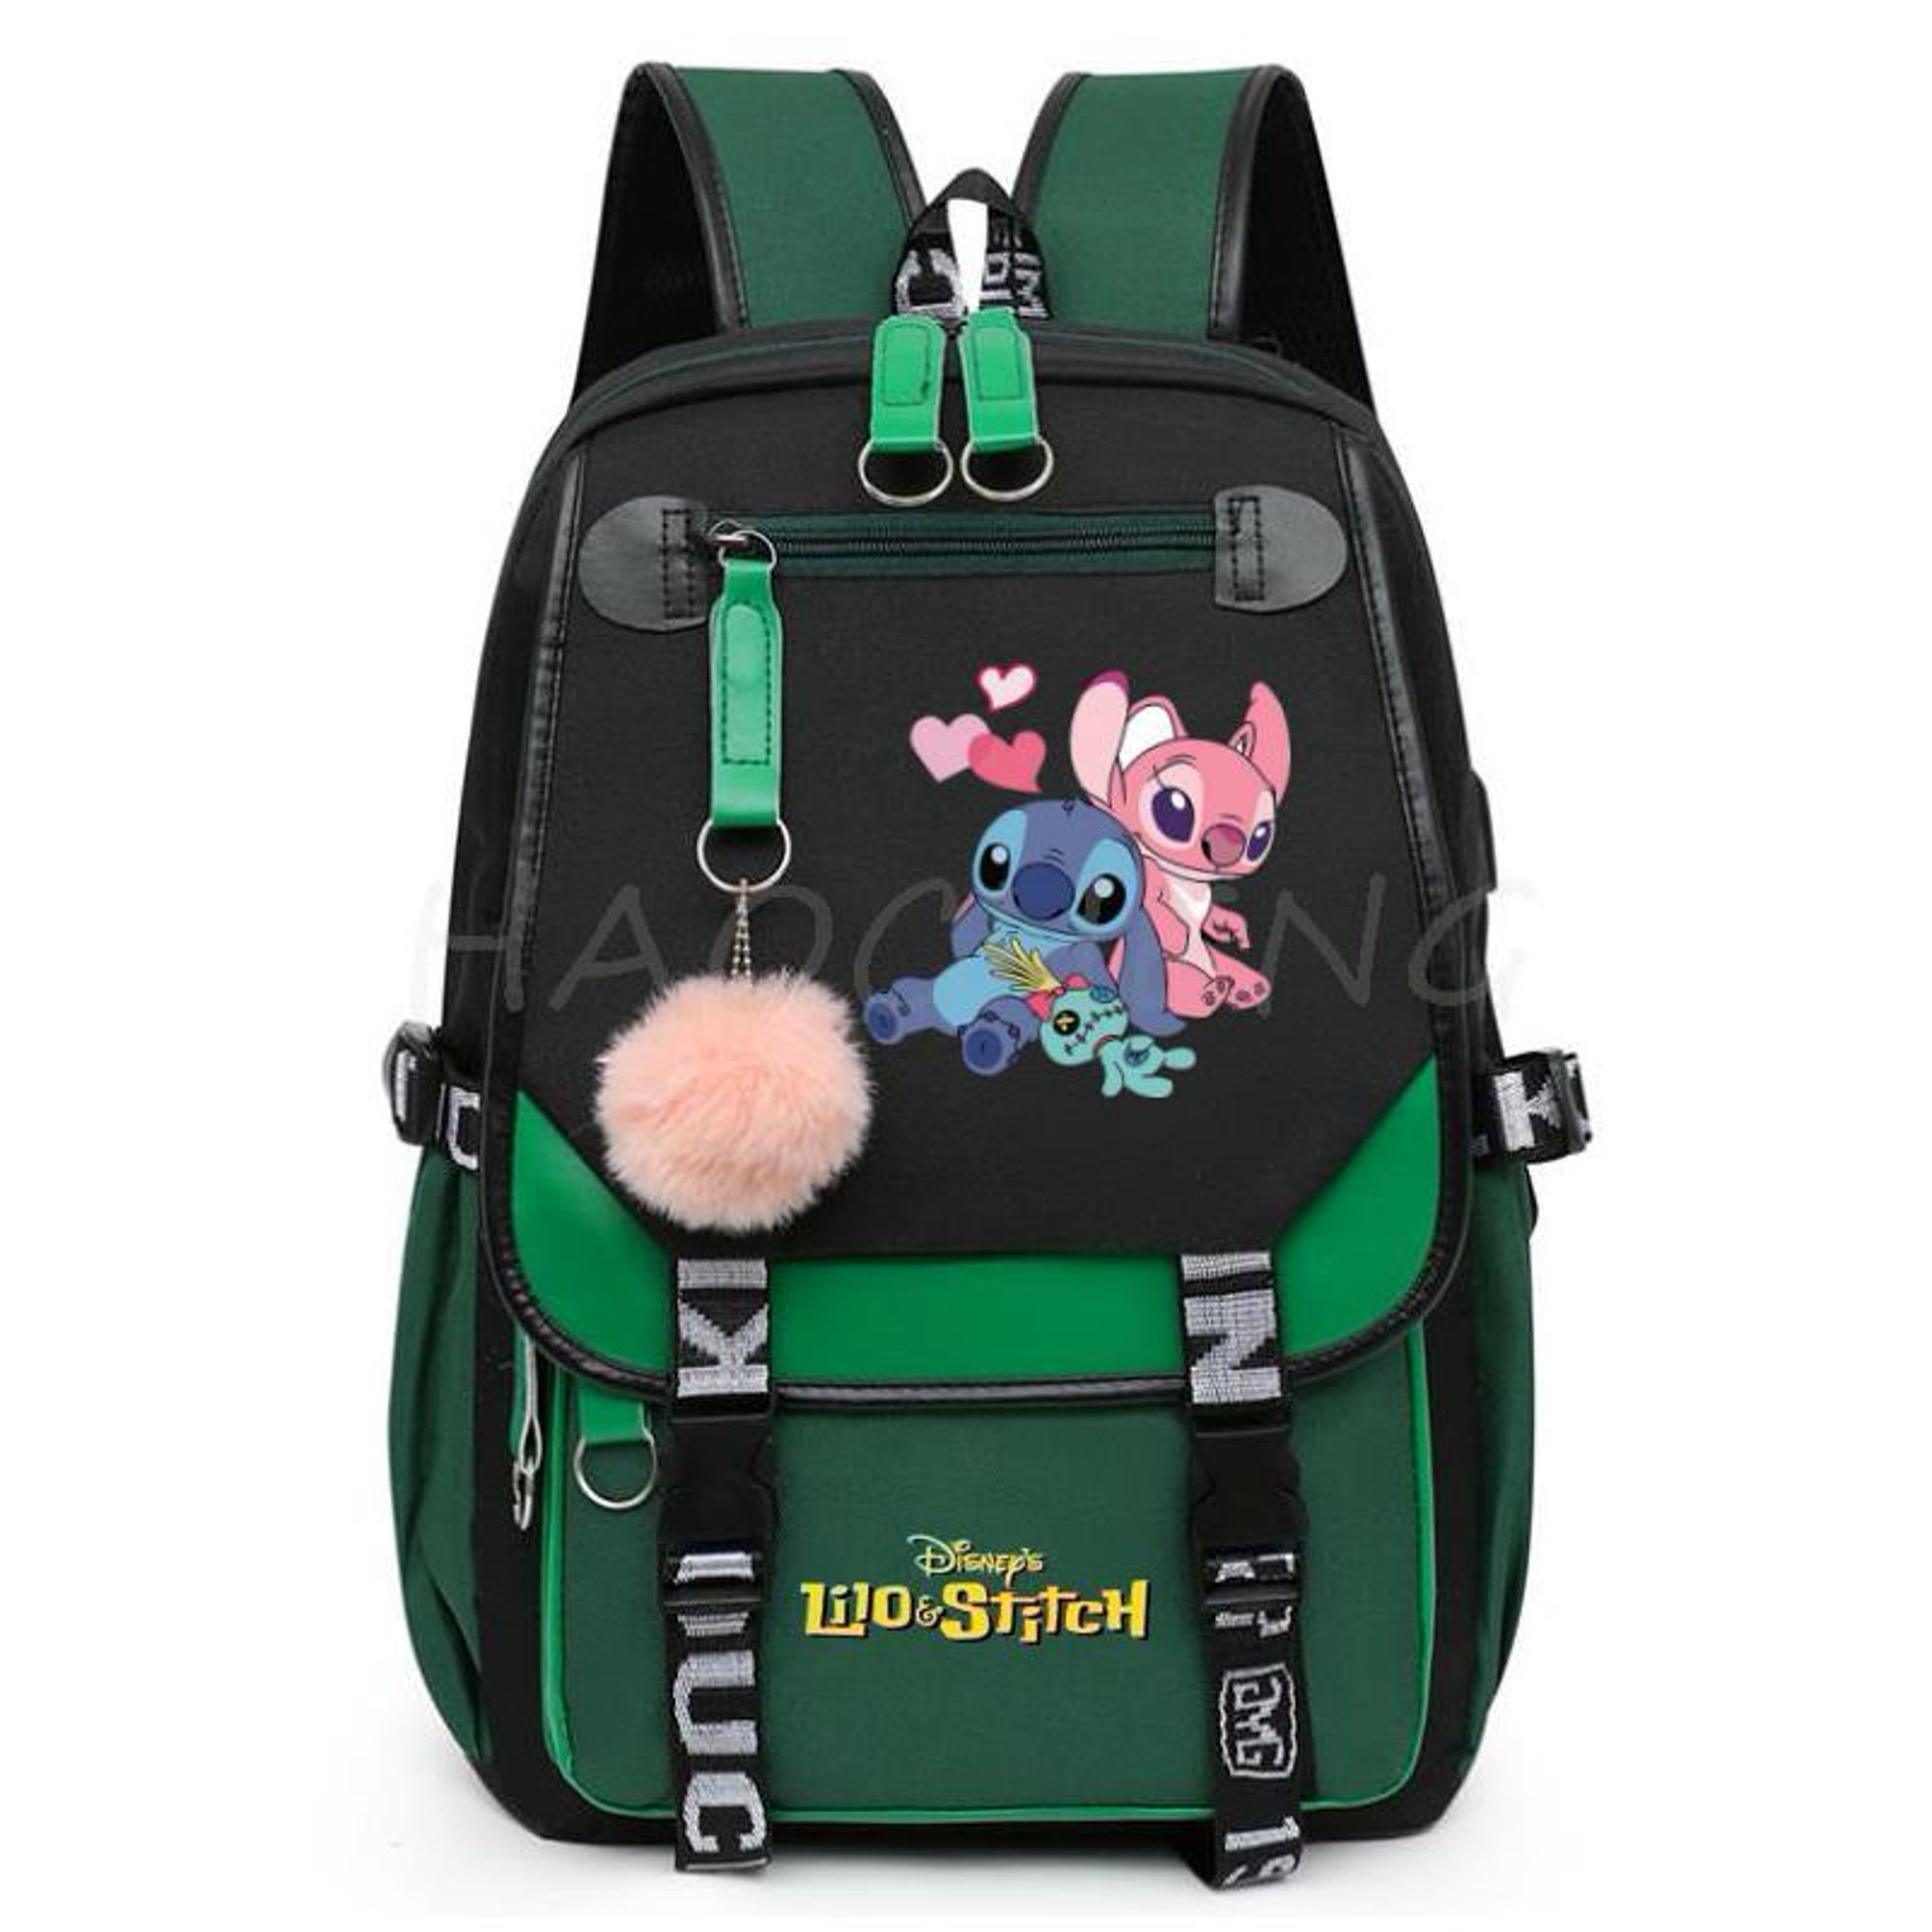  Disney Lilo And Stitch - Juego de mochila para niñas